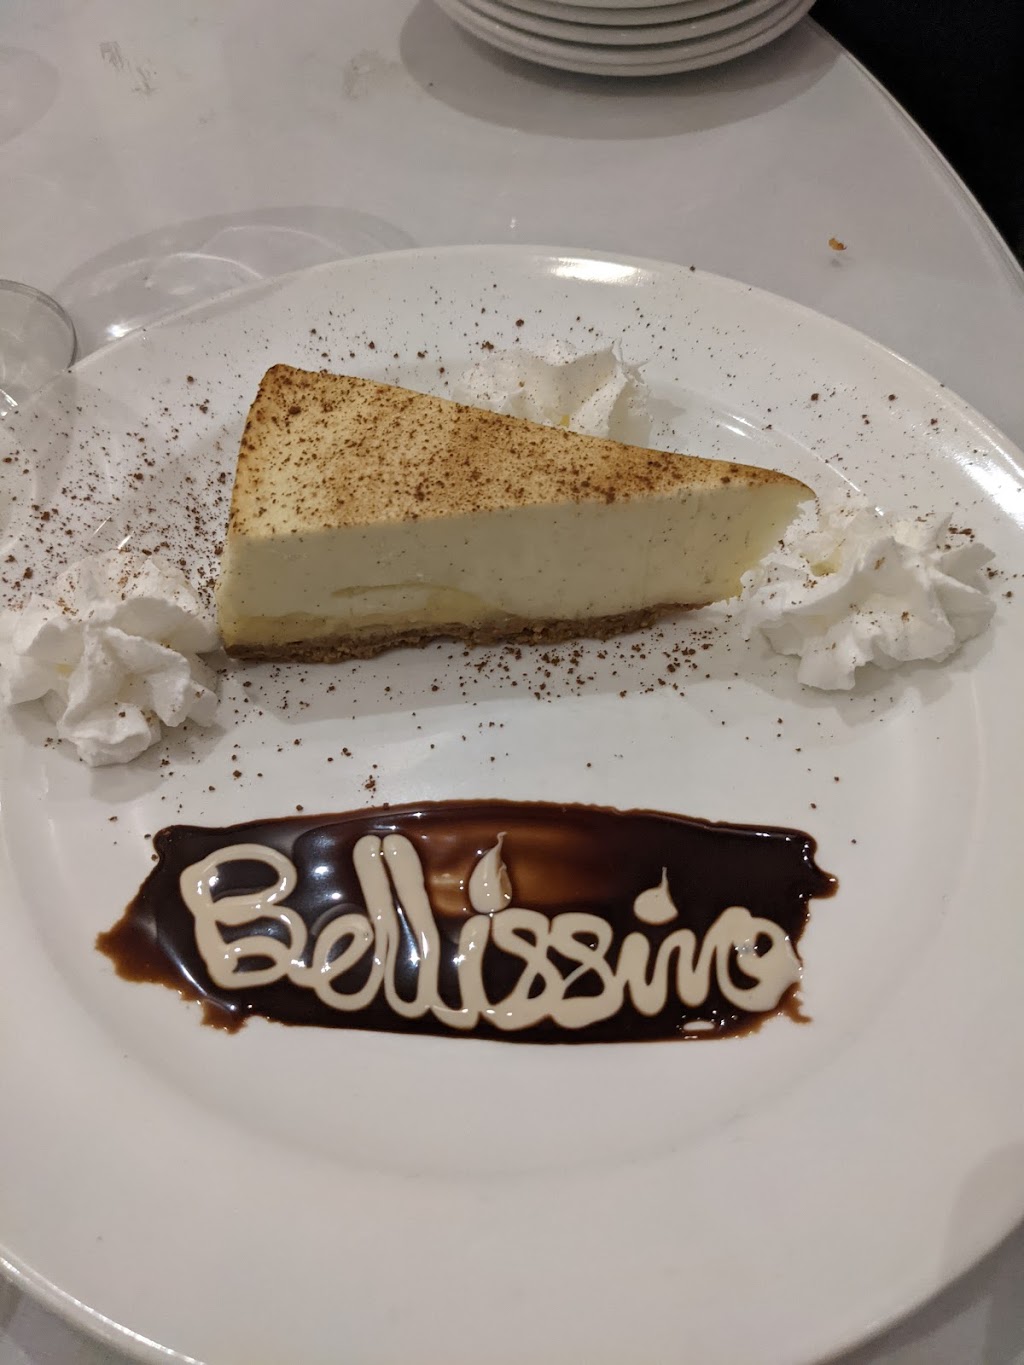 Bellissimo Restaurant | 12 S Kinderkamack Rd, Montvale, NJ 07645 | Phone: (201) 746-6669